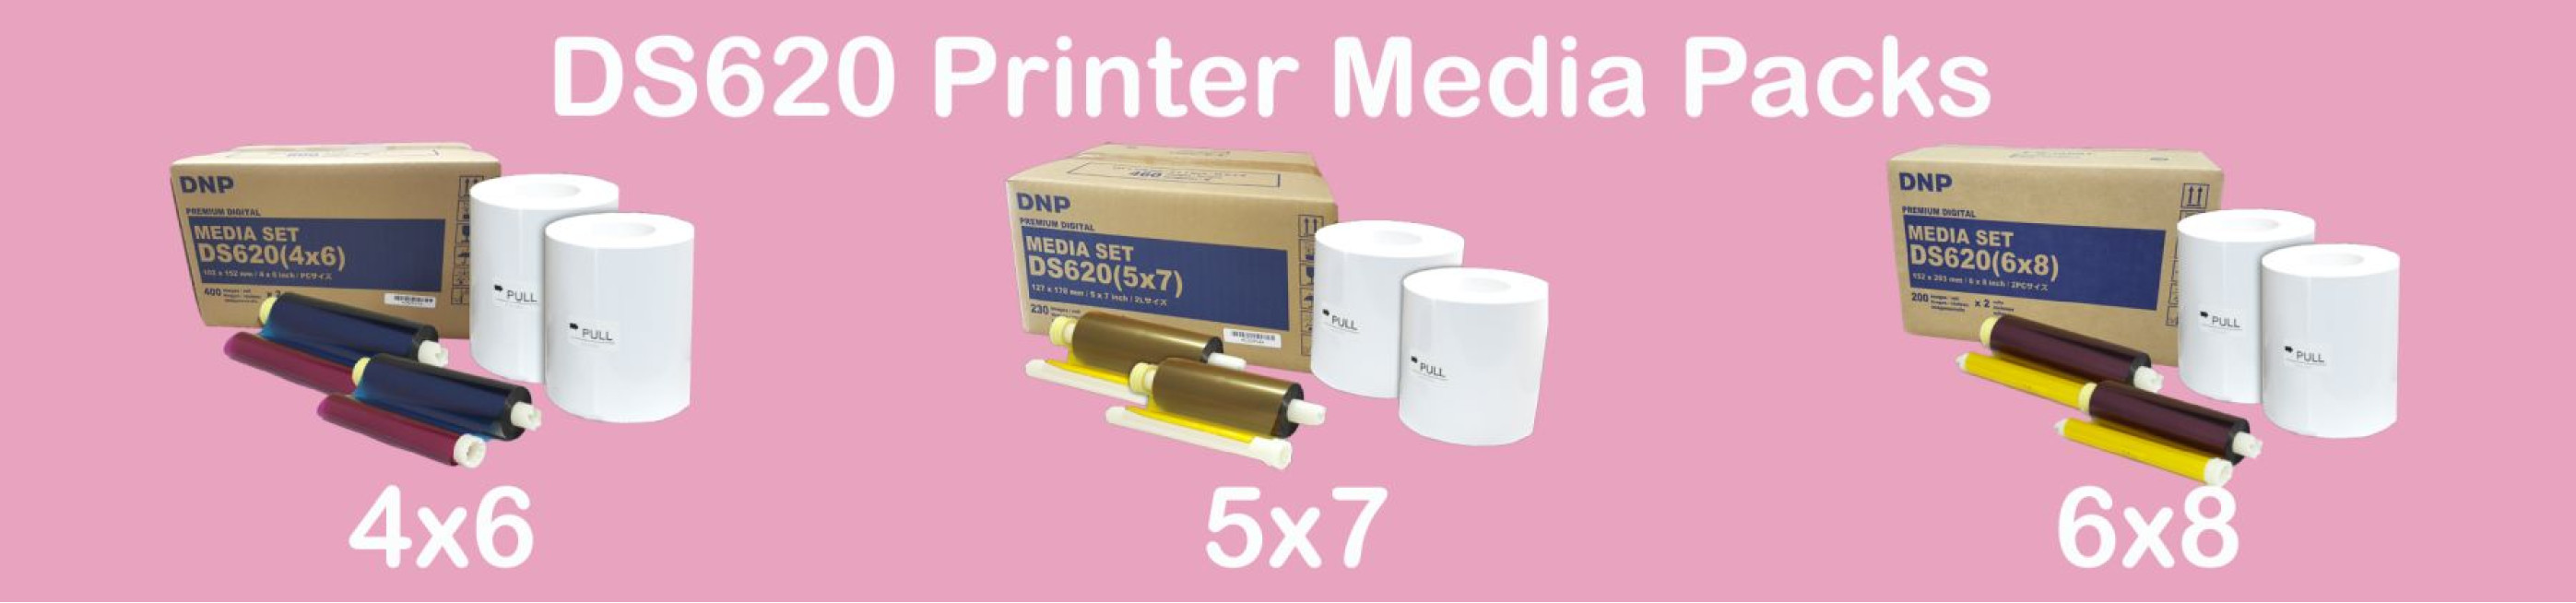 DS620 Media Packs